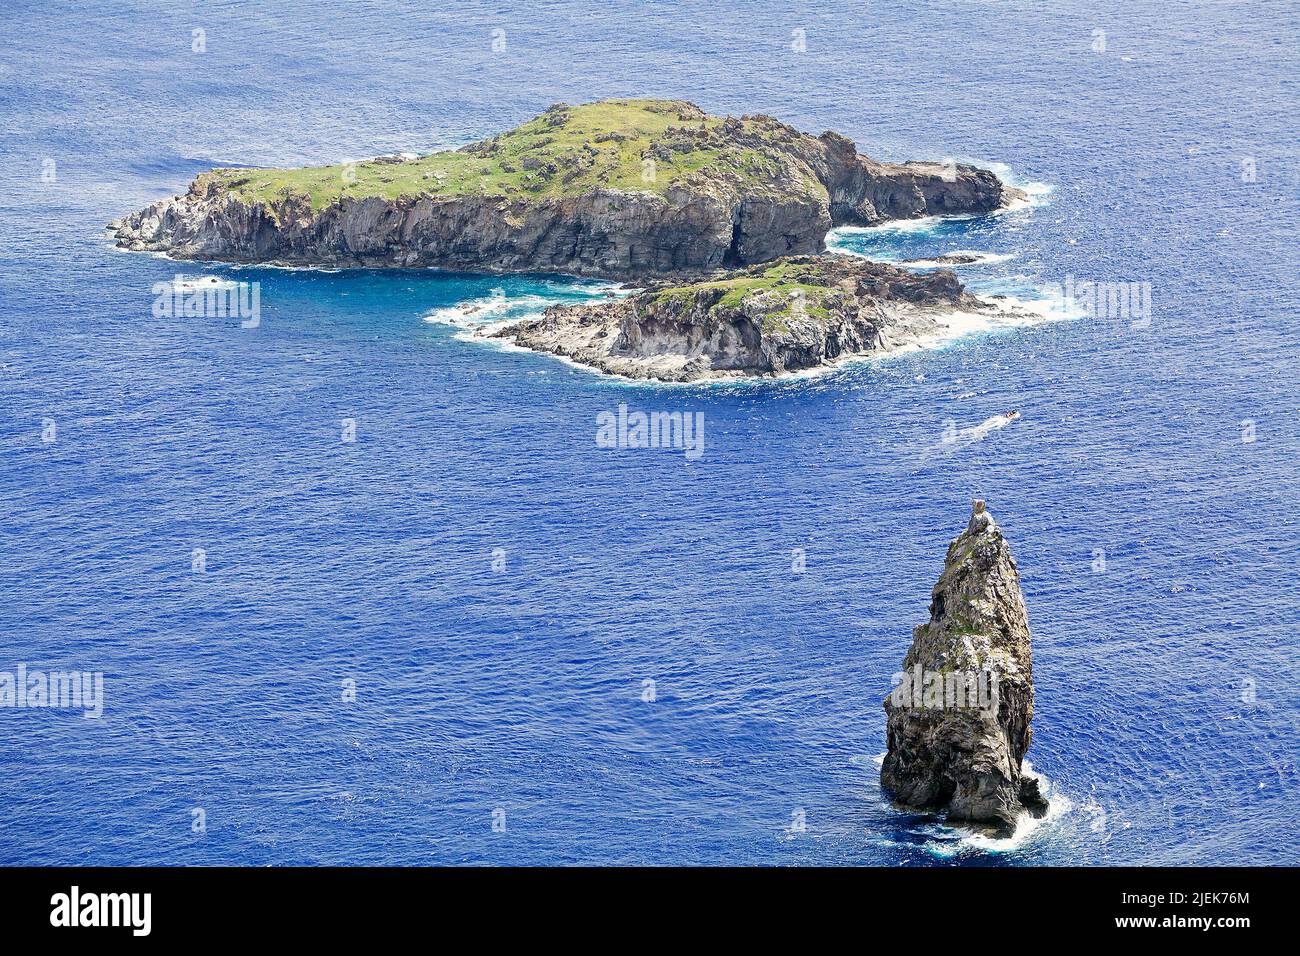 Vista da Orongo al mare, isola di Pasqua, Cile. Motu Iti tra il più grande Motu Nui e lo stack marino di Motu Kao Kao, il luogo del rito del Foto Stock